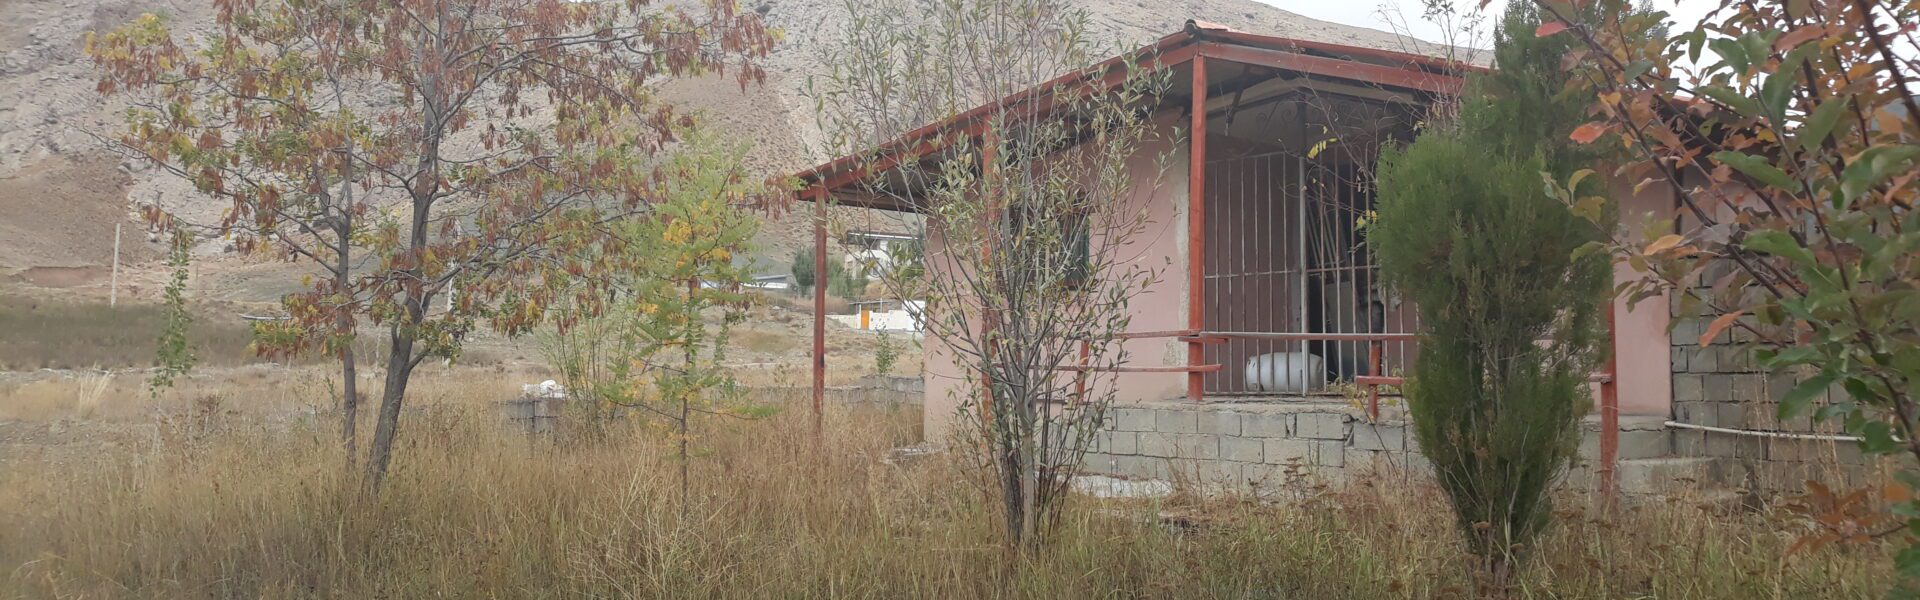 فروش خانه باغی در شهر ارجمند